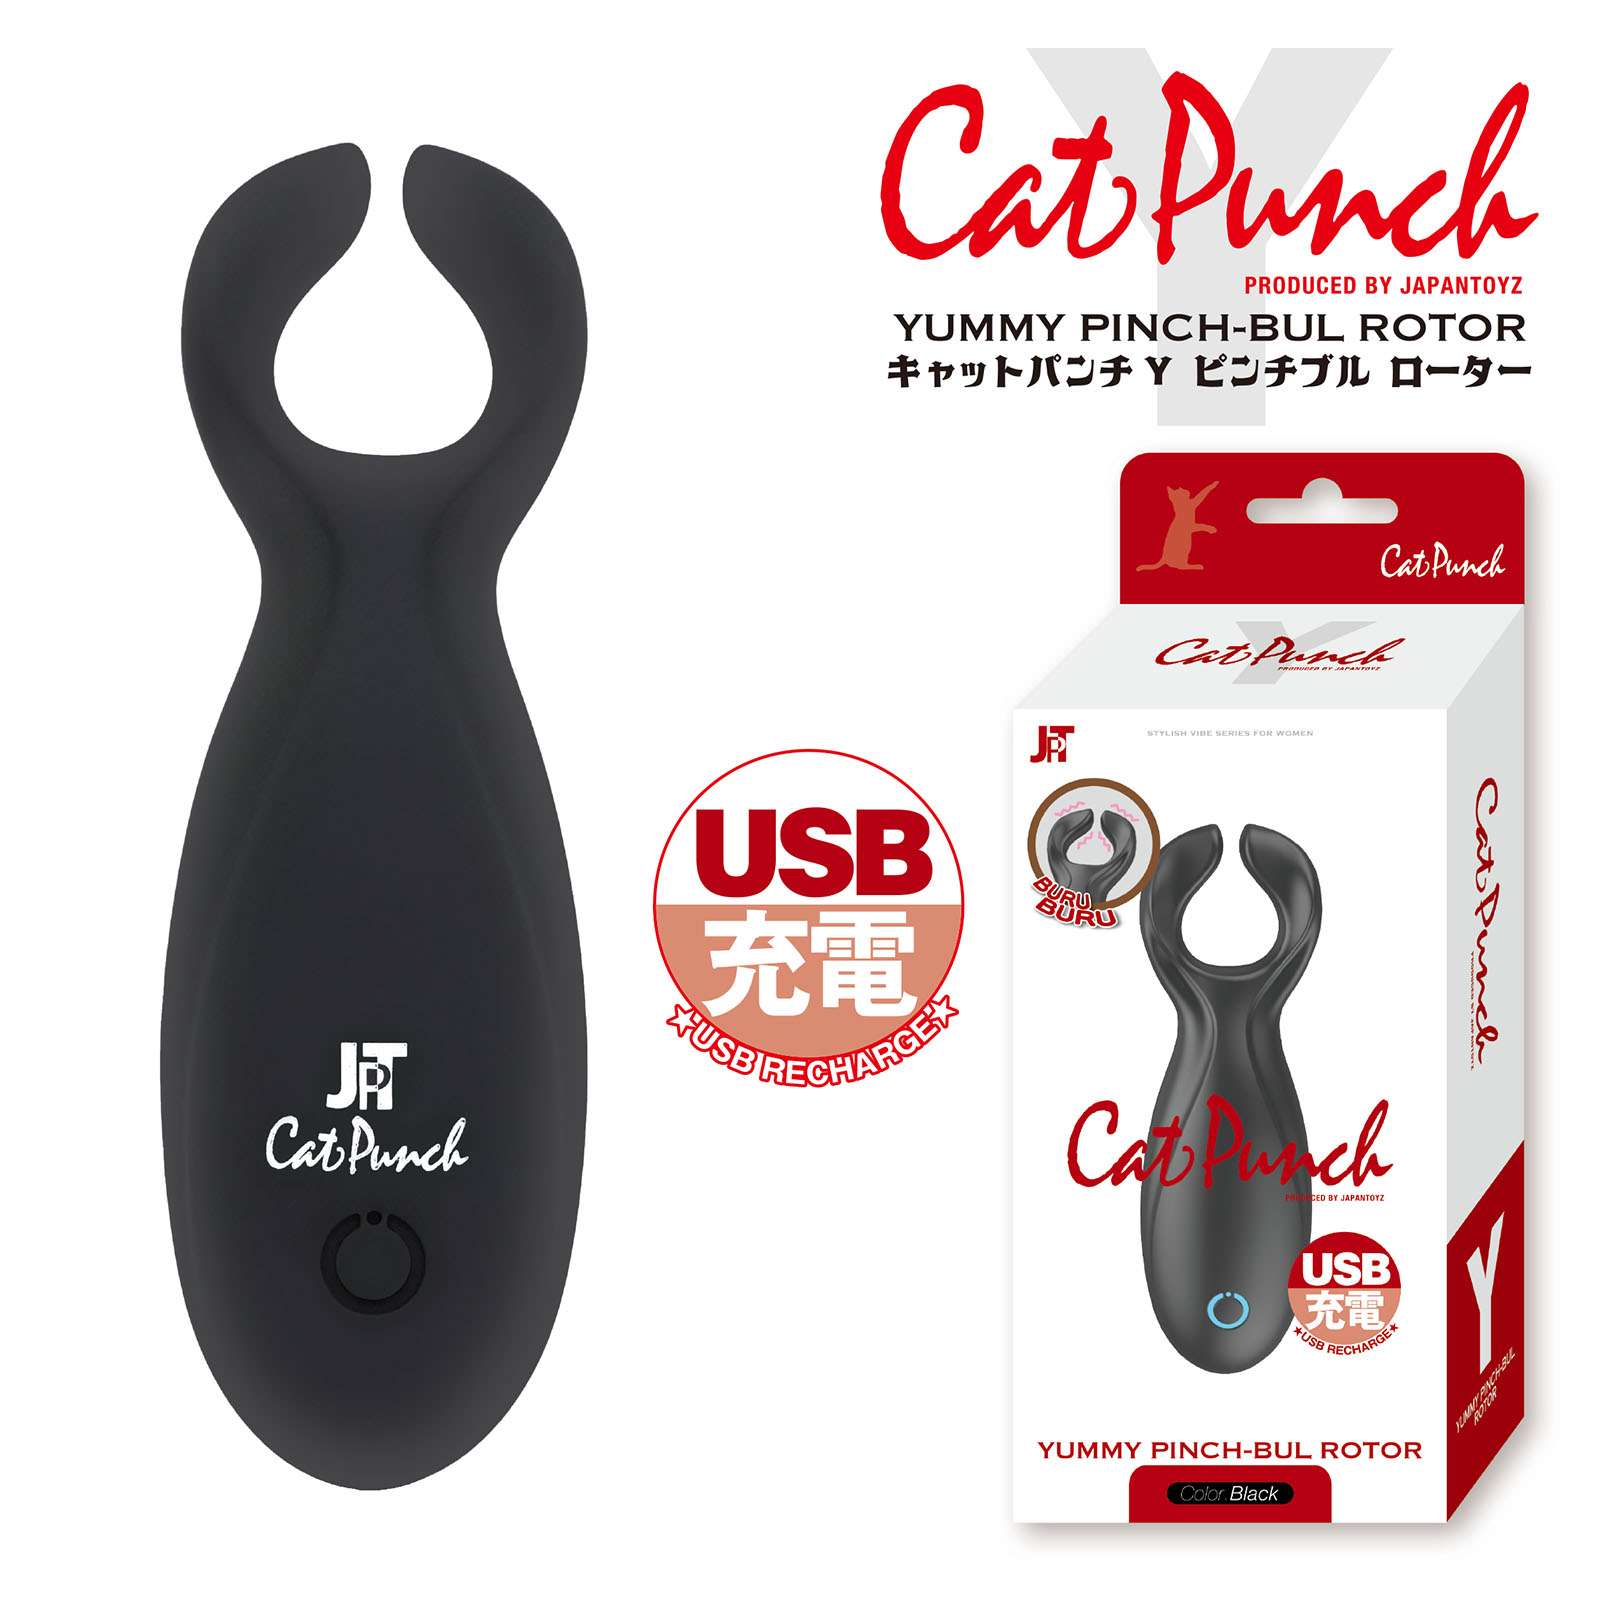 Cat Punch キャットパンチ Y ヤミー ピンチブル ローター01